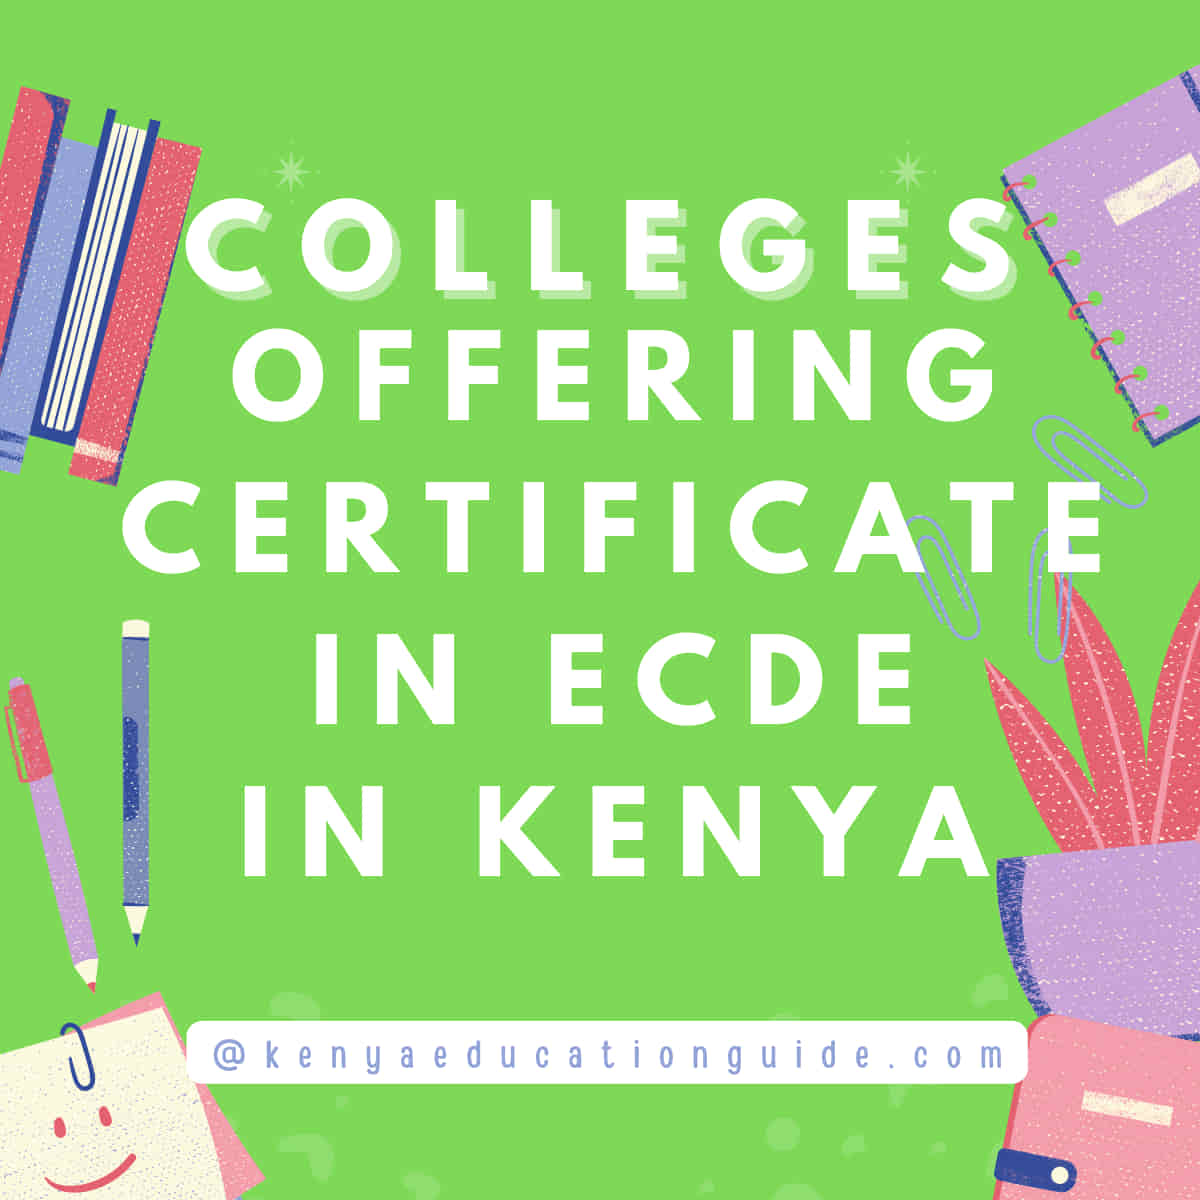 Colleges offering certificate in ECDE in kenya